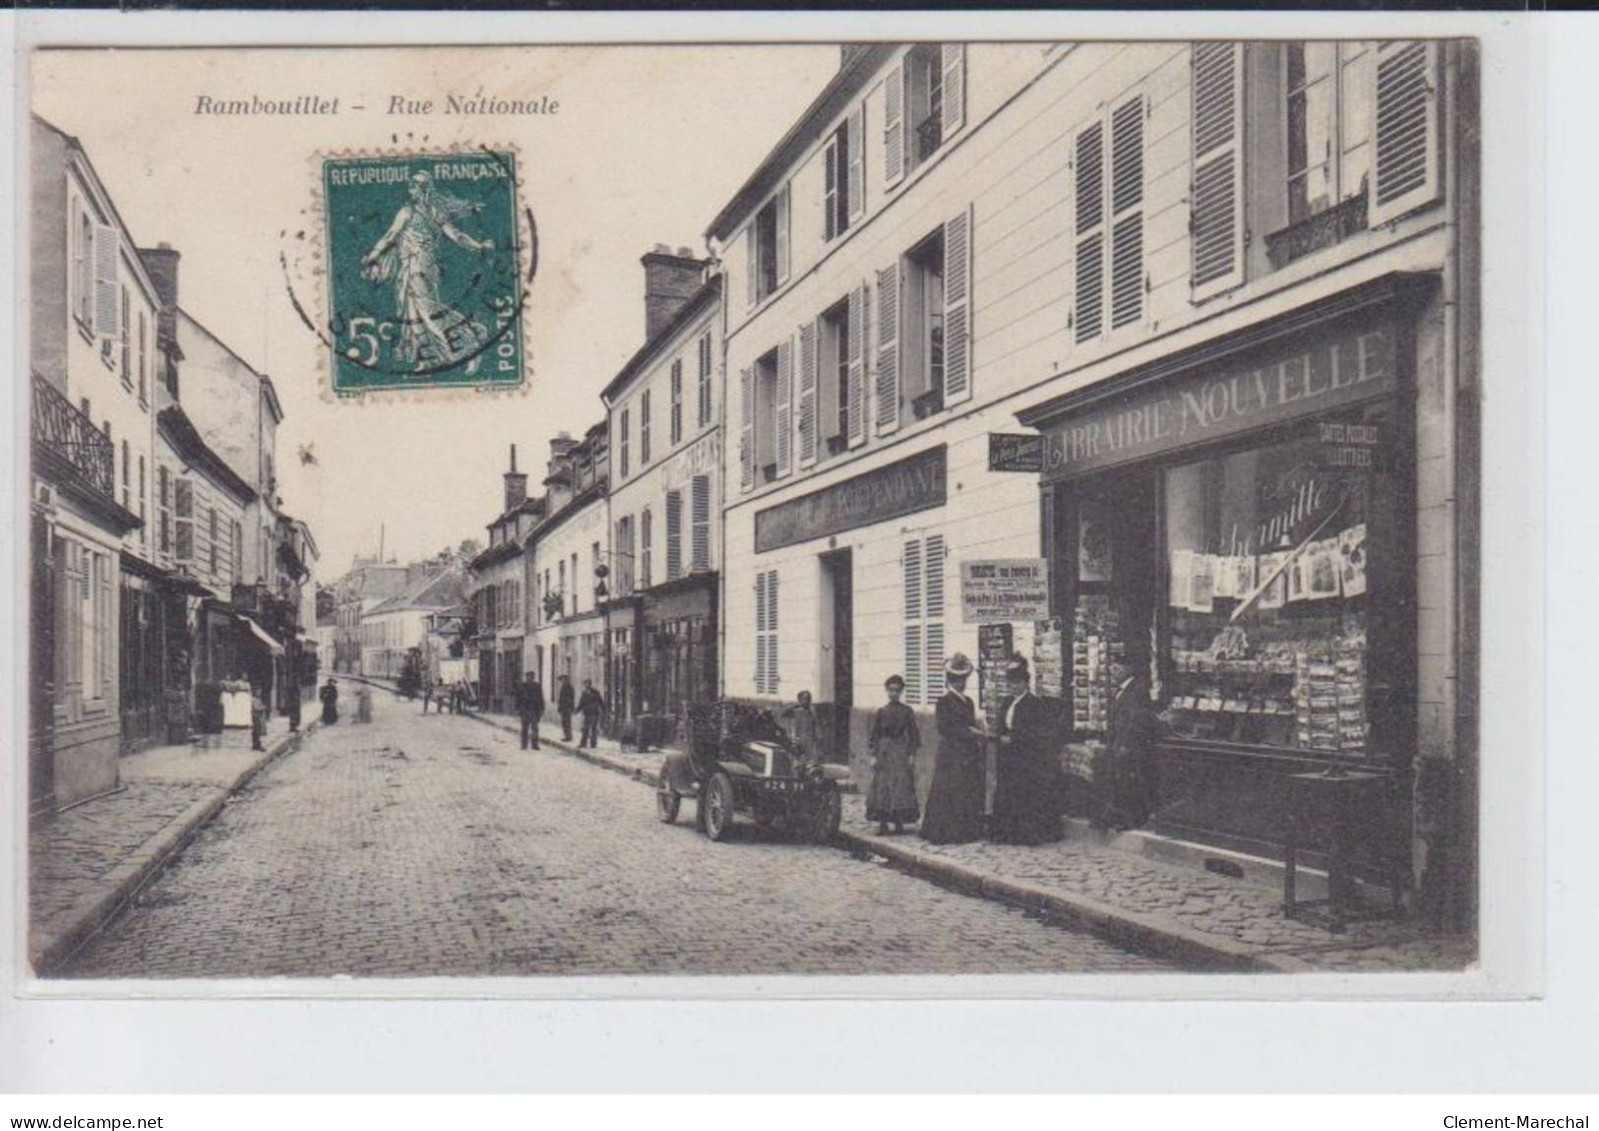 RAMBOUILLET: Rue National, Librairie Nouvelle - état - Rambouillet